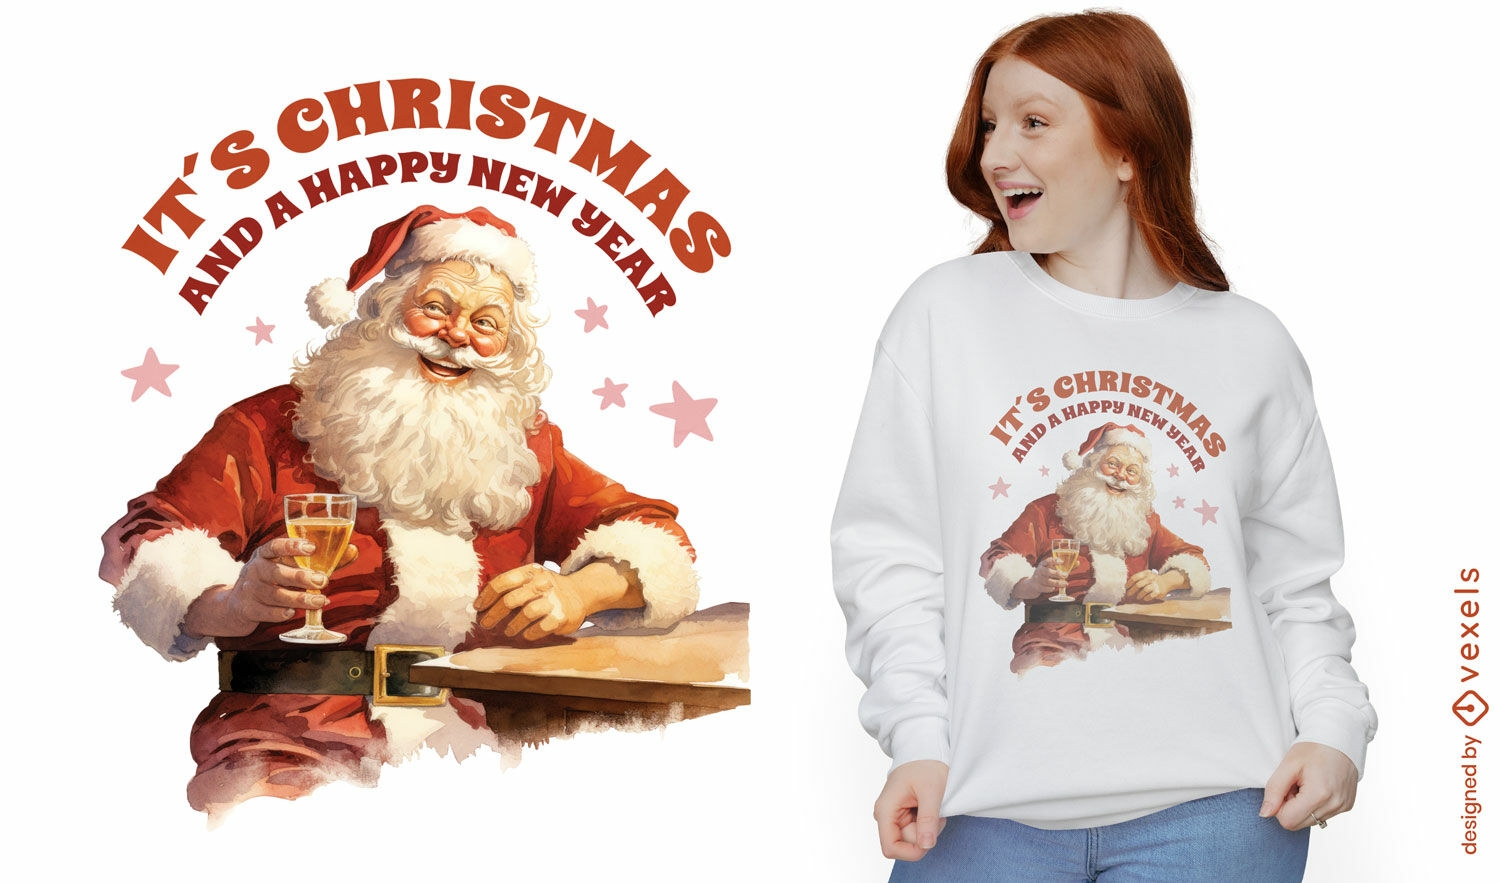 Dise?o de camiseta navide?a Jolly Santa Claus.